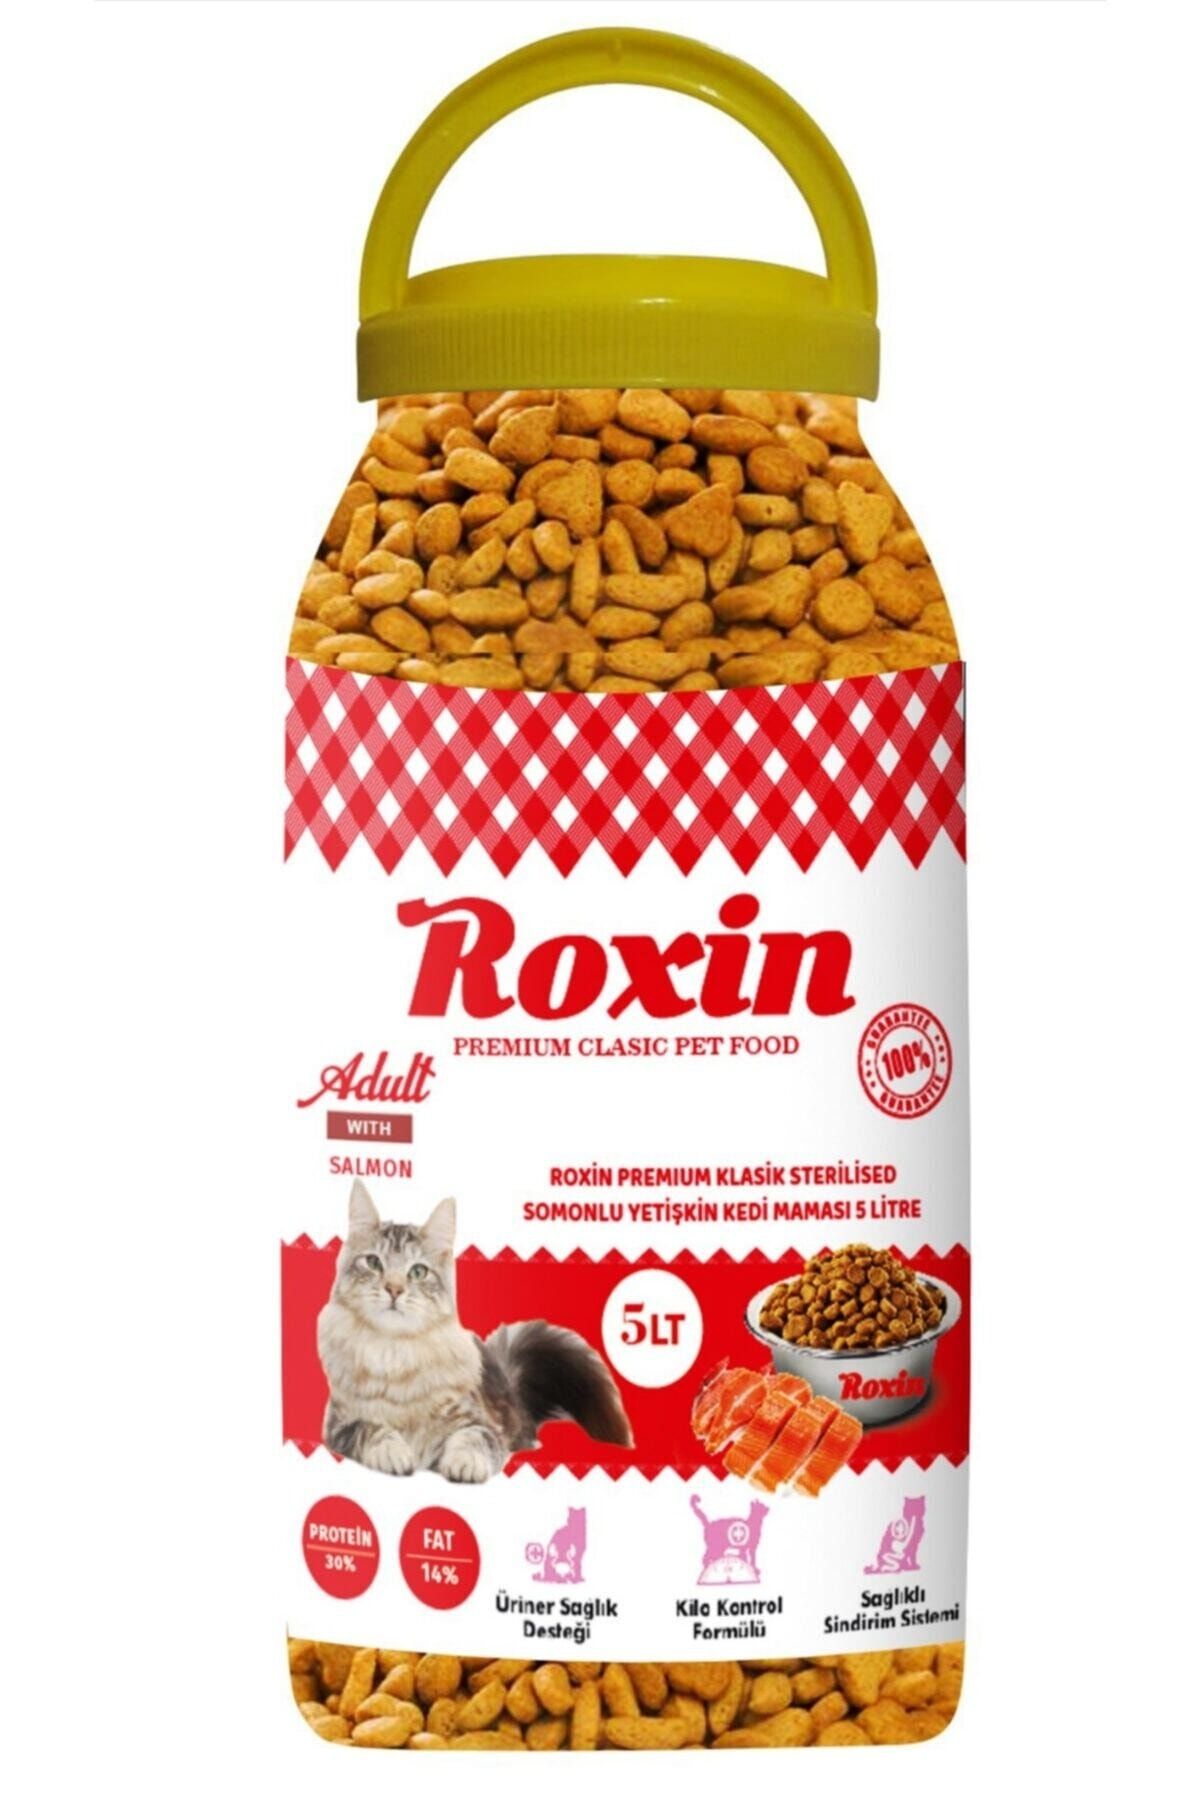 Roxin Premıum Klasik Sterilised Somonlu Yetişkin Kedi Maması 5 Lt